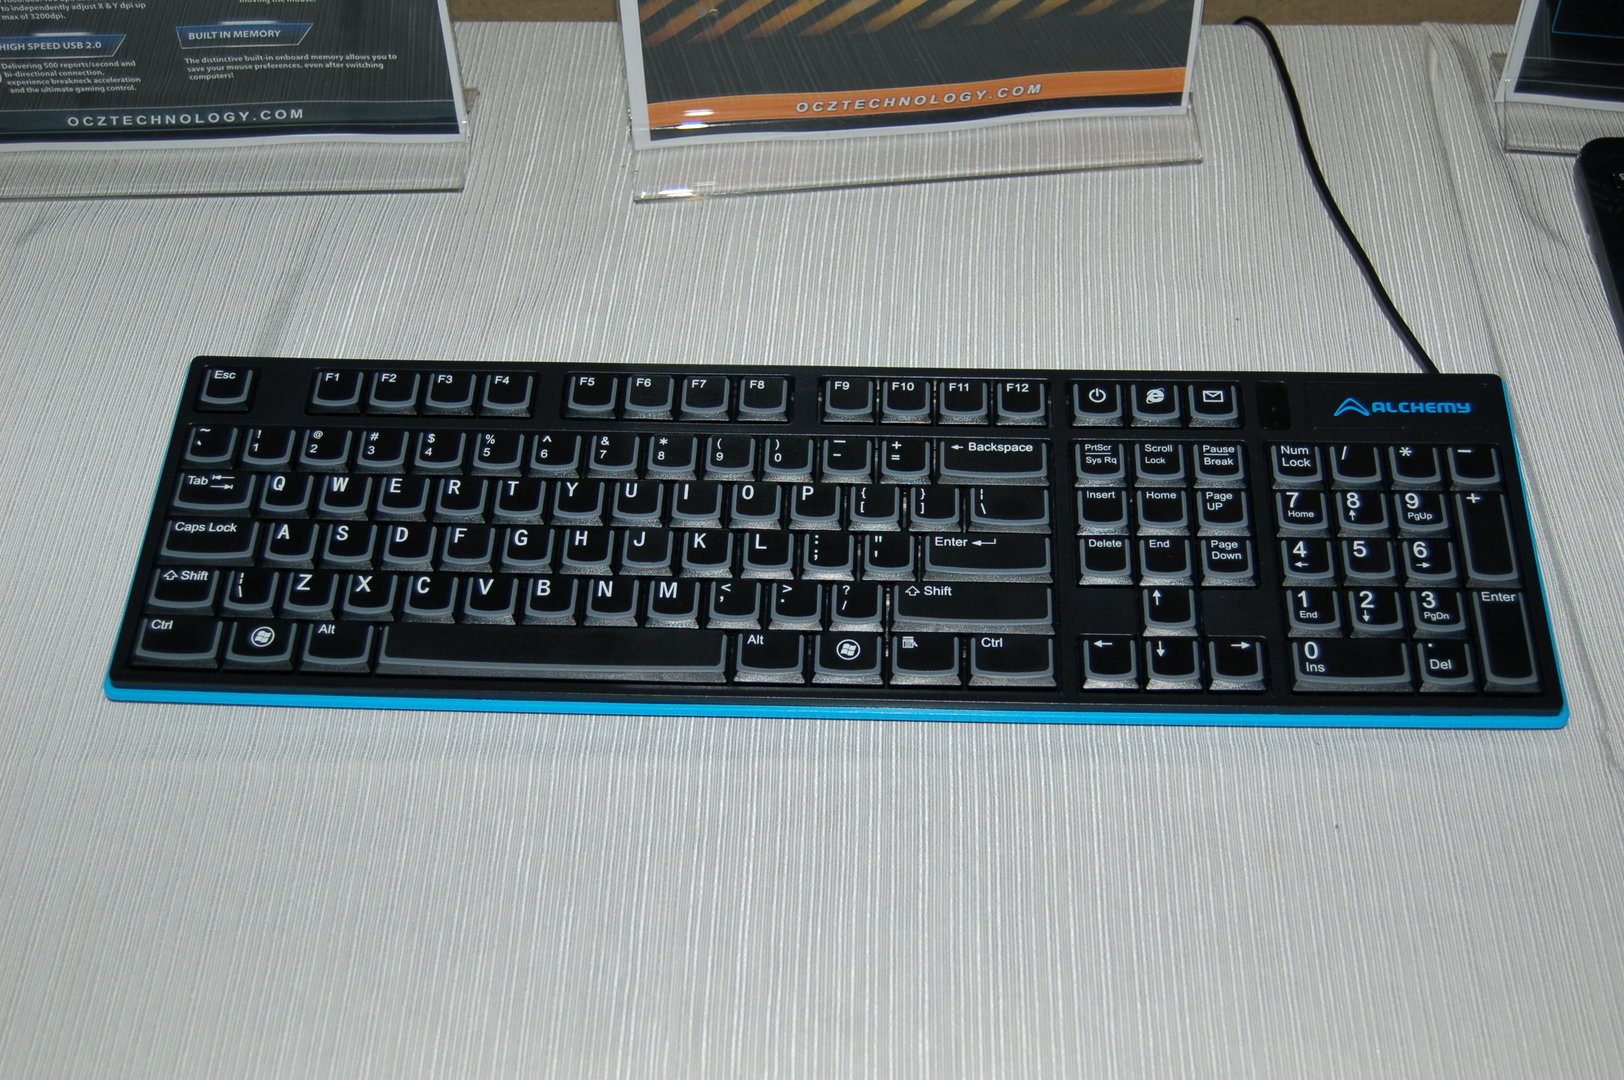 Tastatur von OCZ